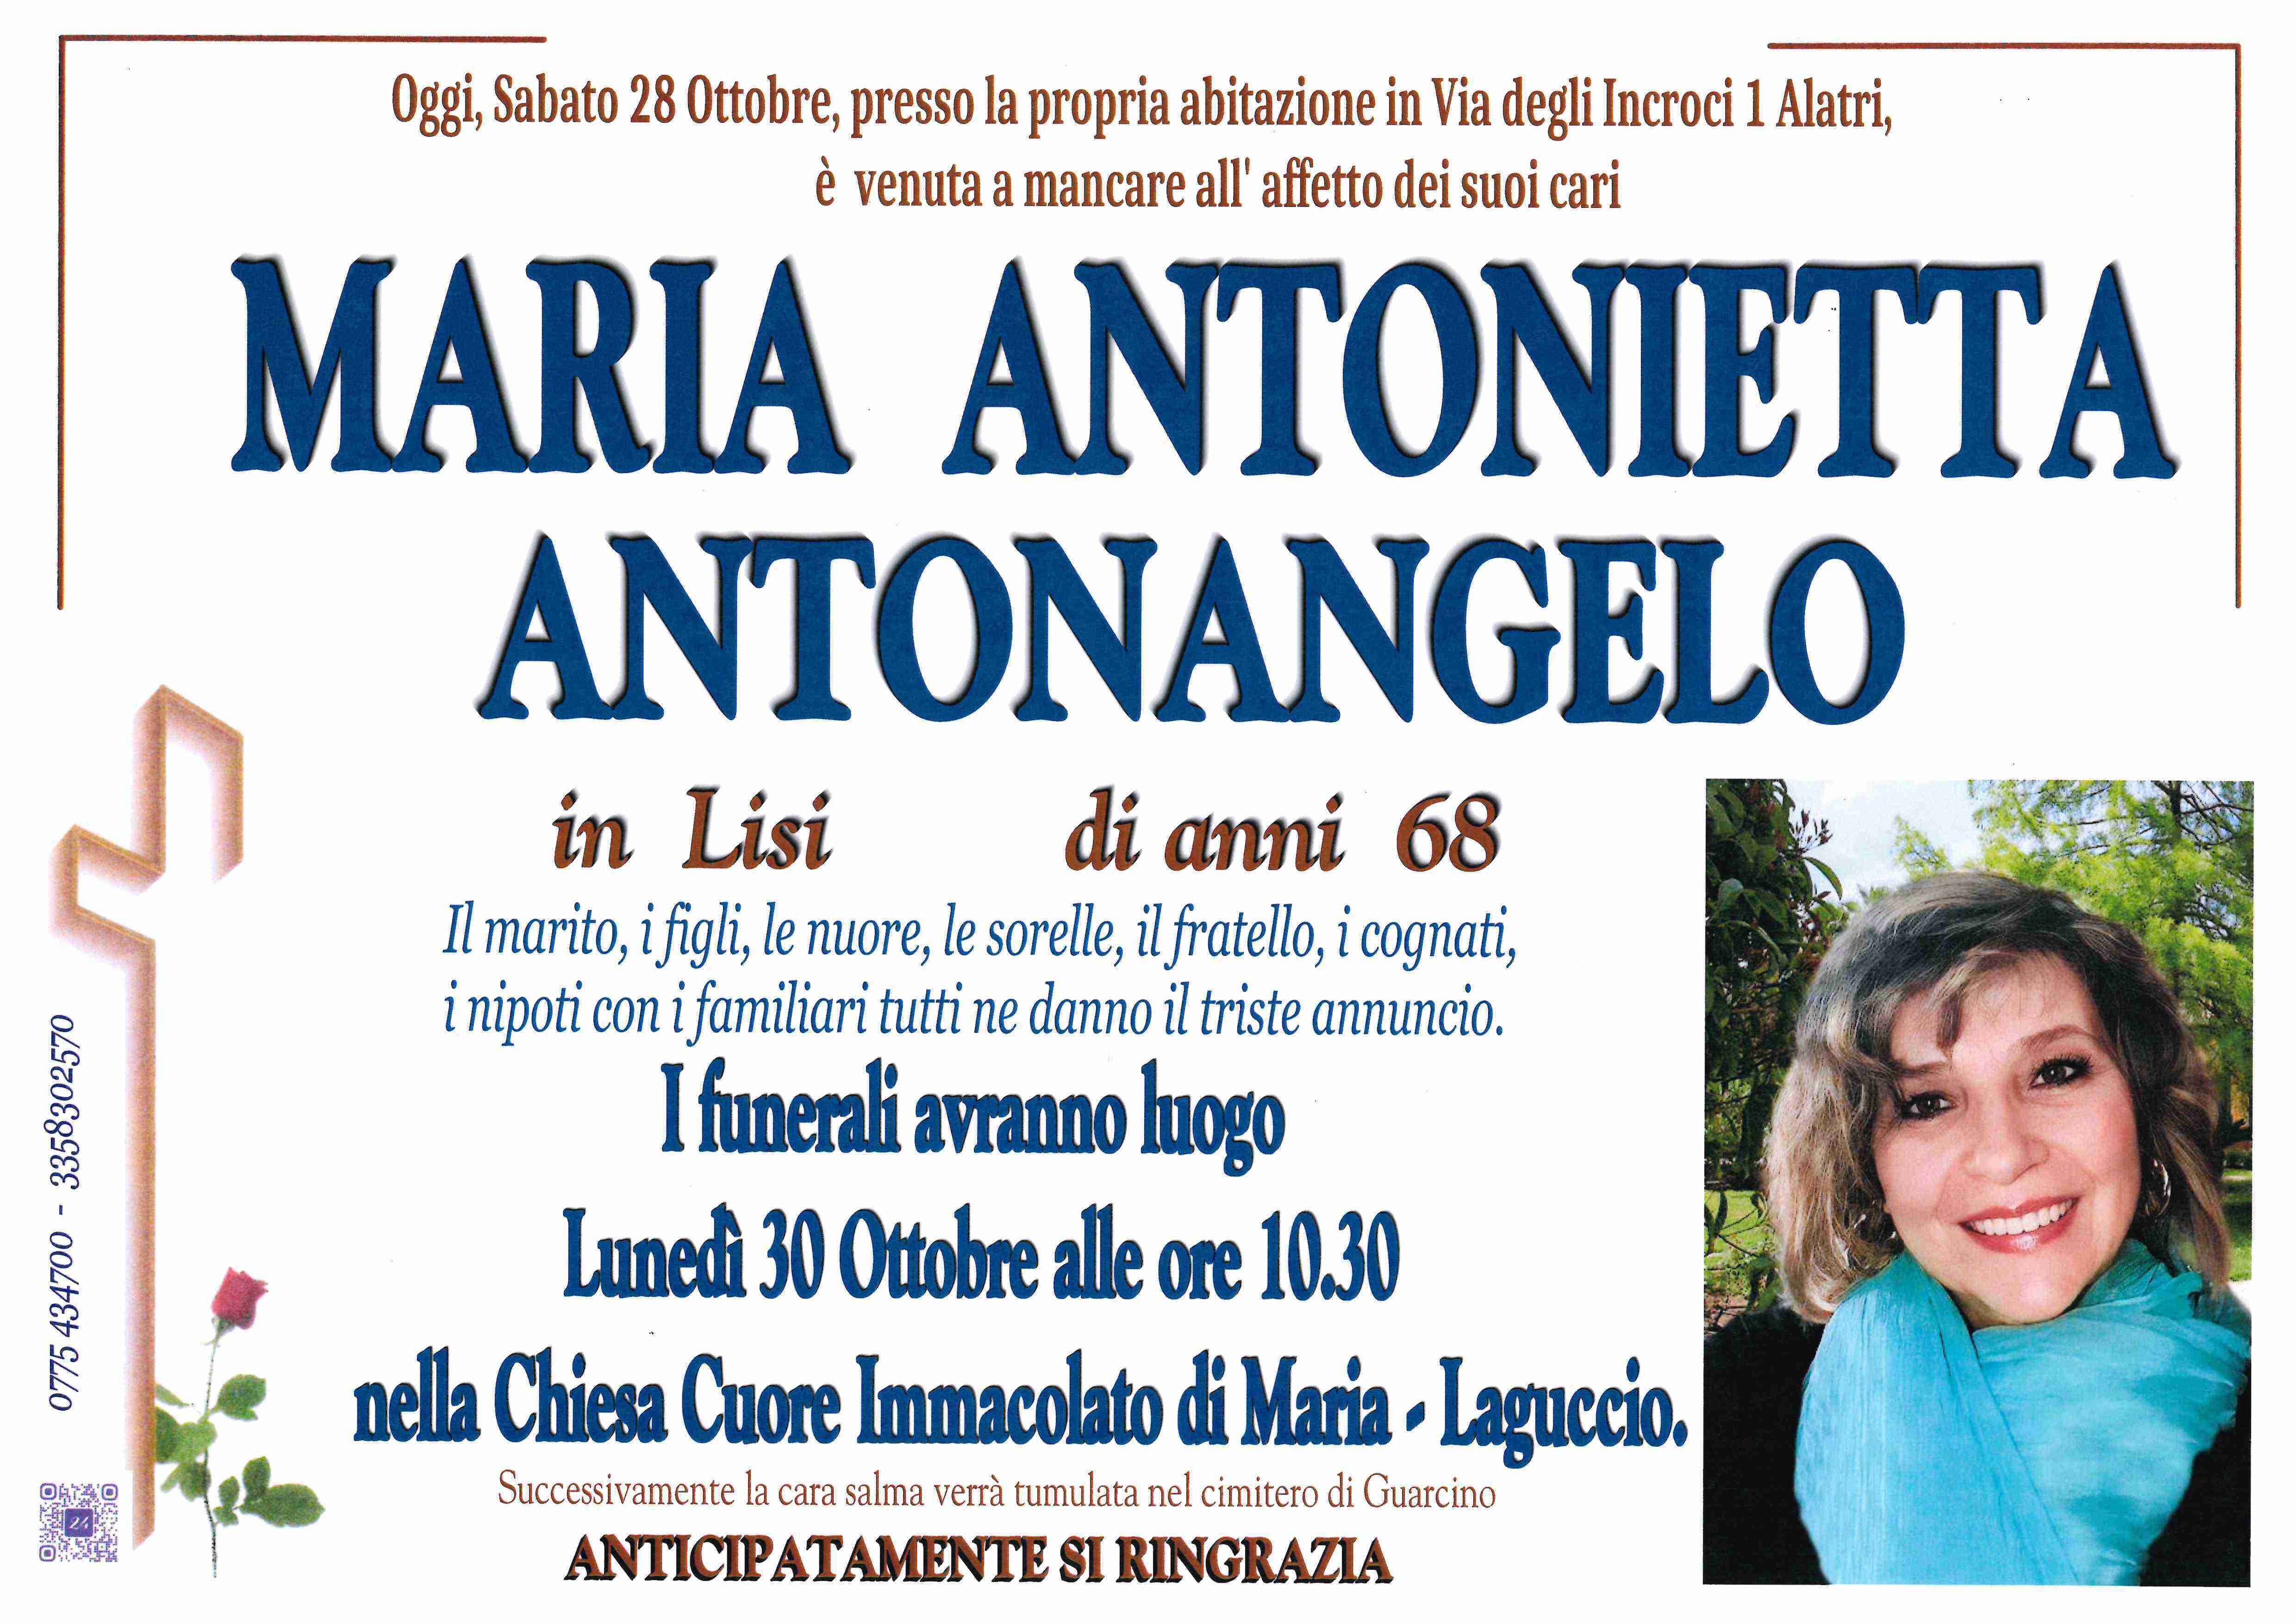 Maria Antonietta Antonangelo